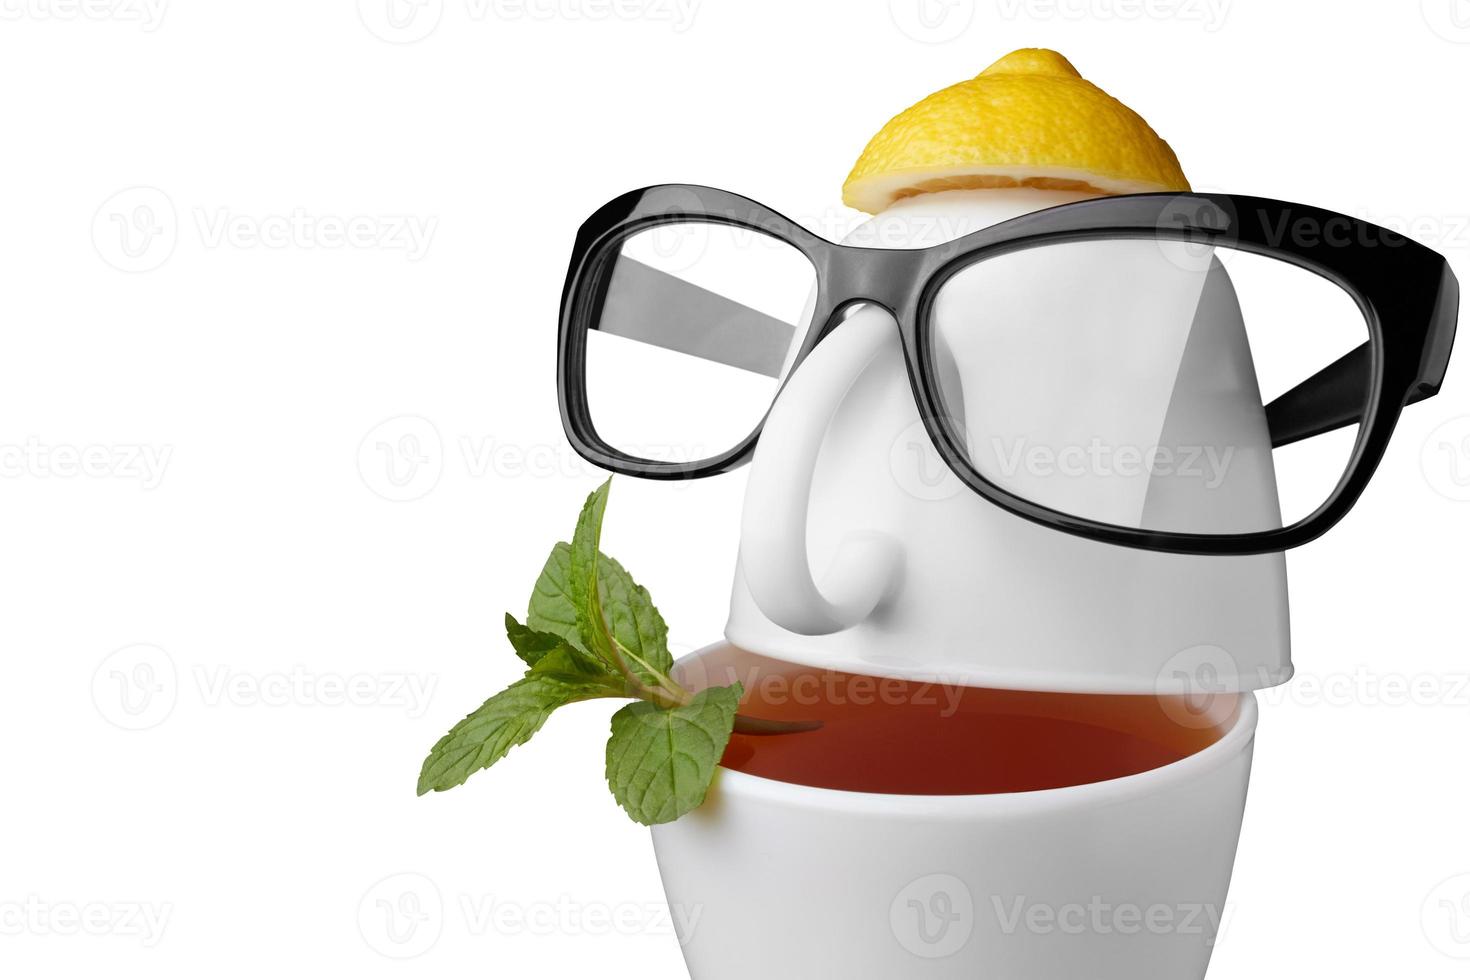 composizione creativa sul tema del tè. tazze da tè a forma di volto umano con occhiali. isolato su bianco foto